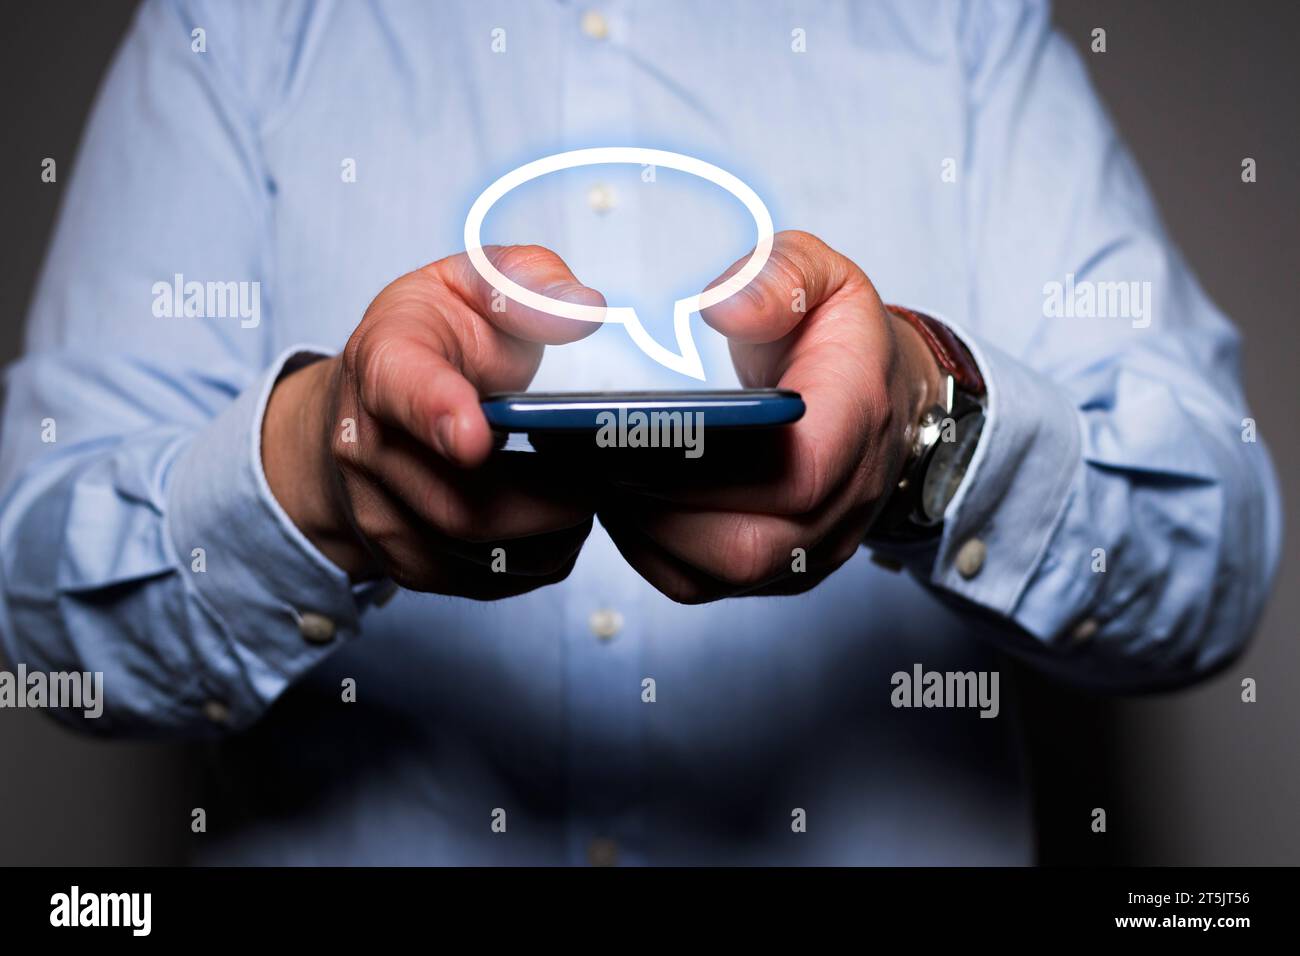 Primo piano delle mani di un uomo caucasico irriconoscibile che tiene in mano un telefono cellulare mentre vede un'icona fumettistica virtuale fluttuare sopra lo smartphone. Foto Stock